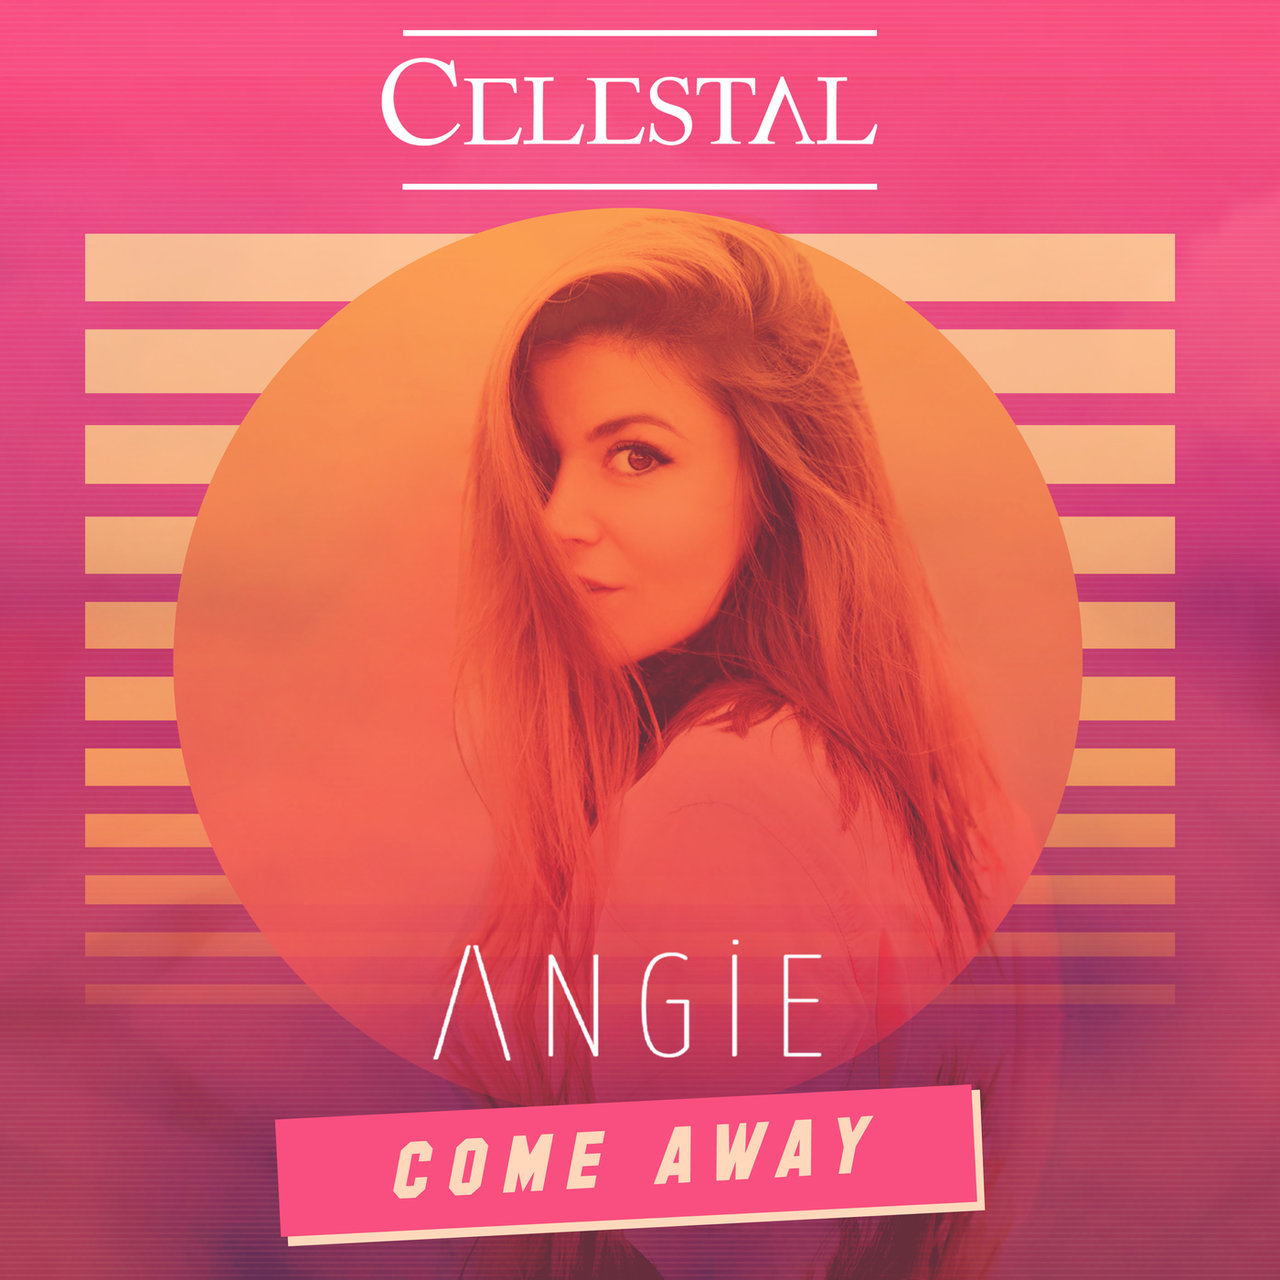 Celestal & A N G I E Come Away cover artwork